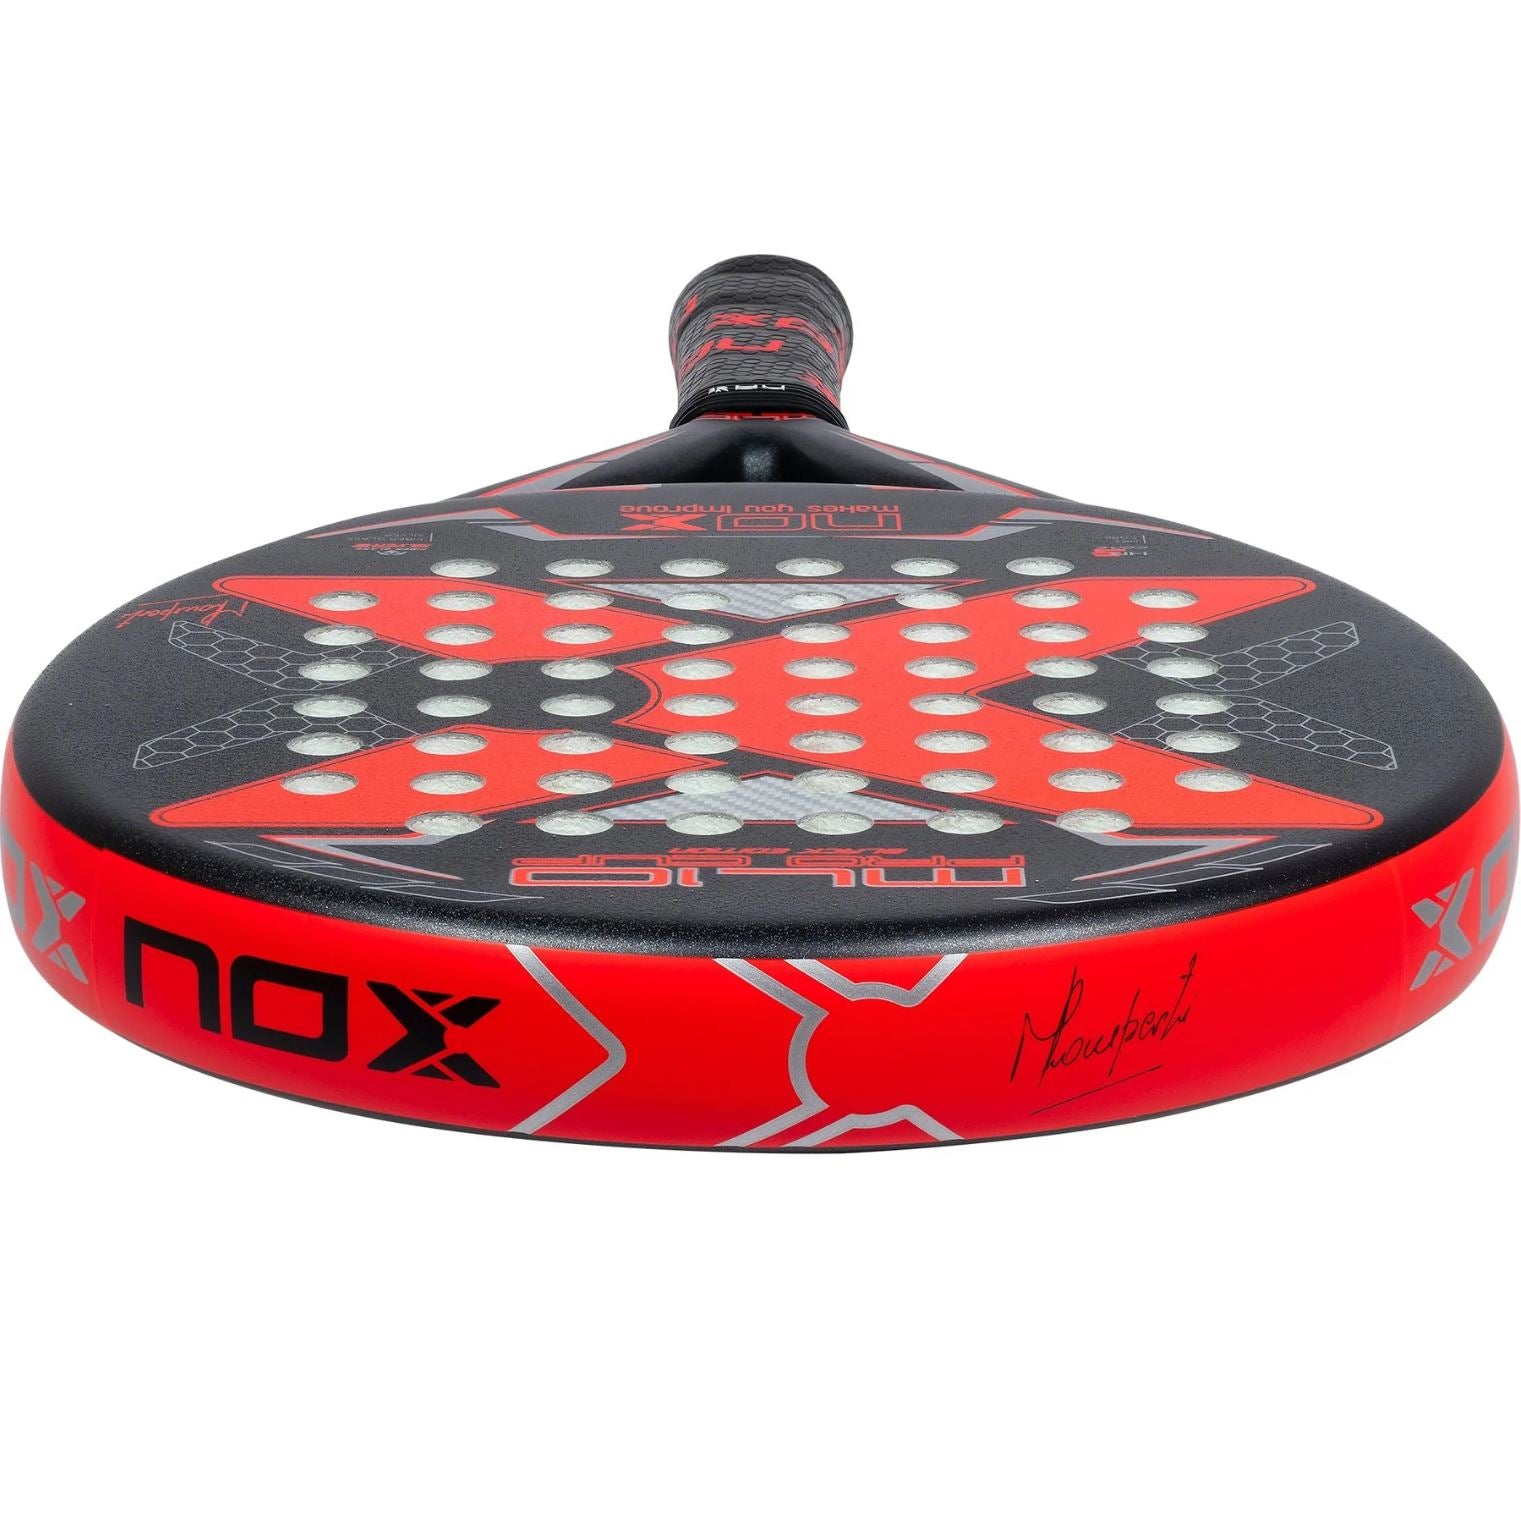 Nox ML10 Pro Cup Black Edition Arena 2023